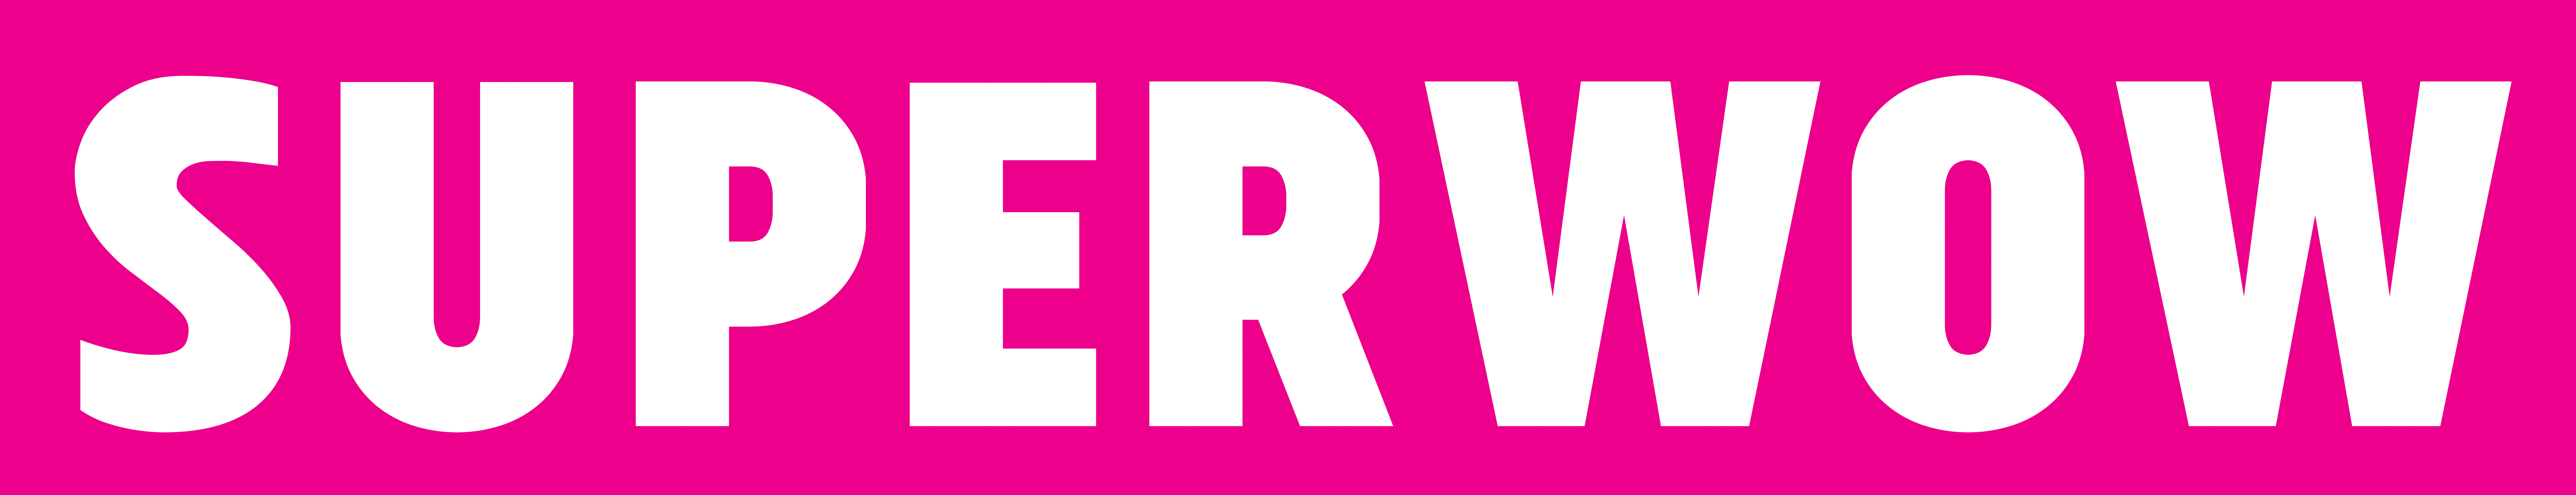 pink superwow logo 2020